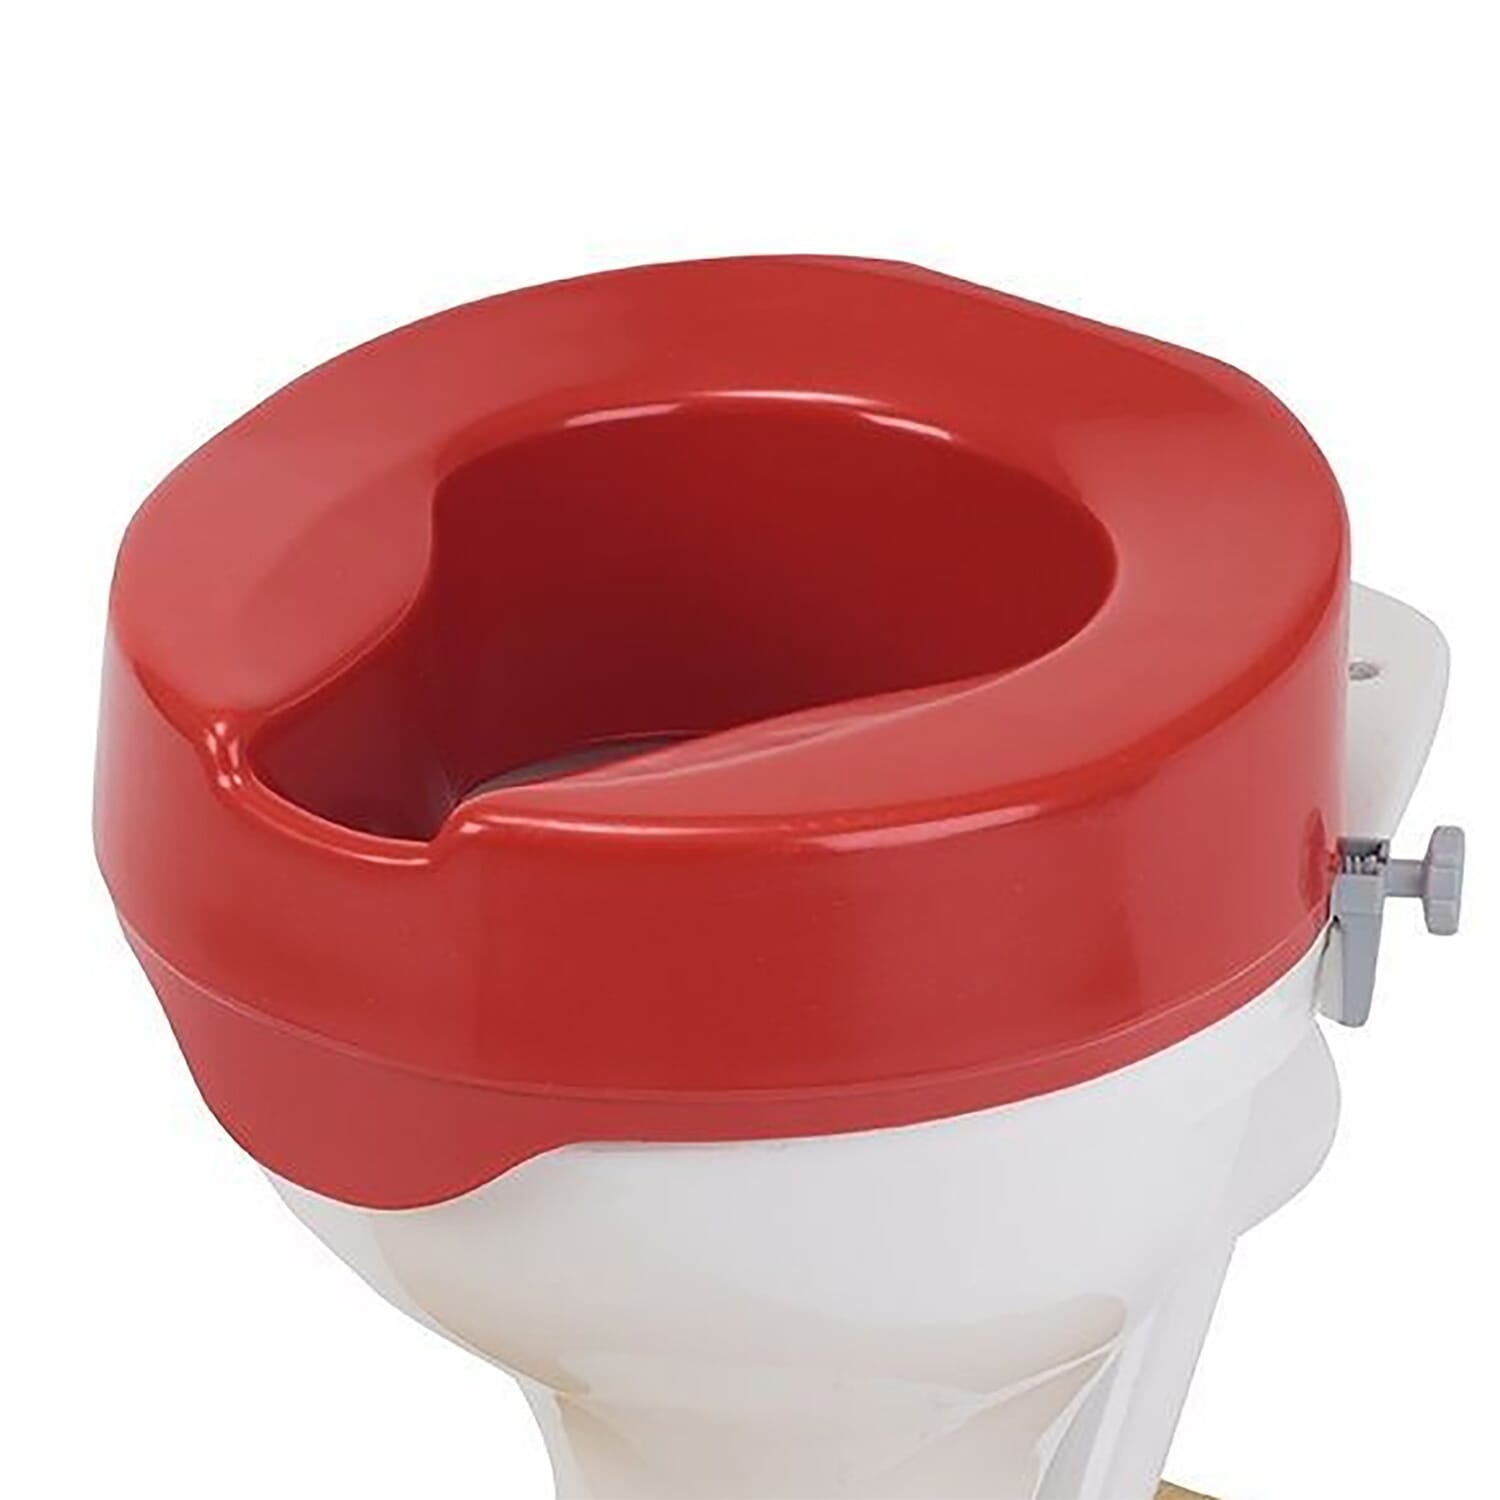 Commander le rehausseur de toilettes rouge - 10 cm